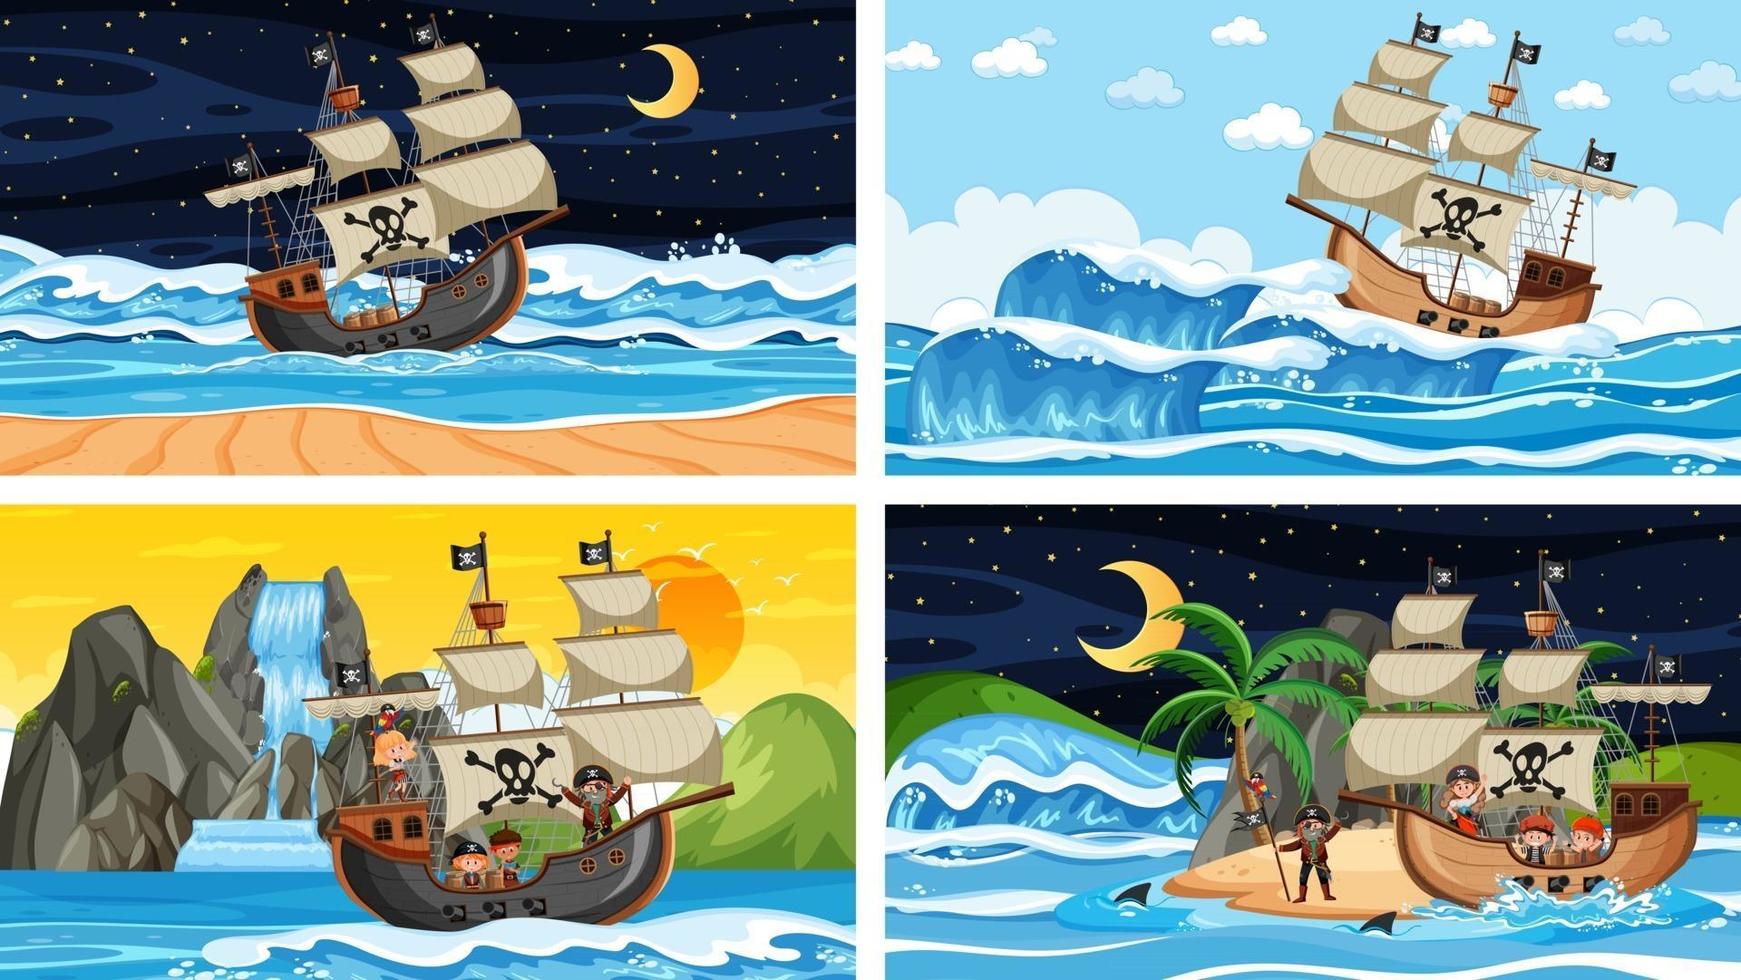 conjunto de diferentes cenas de praia com navio pirata vetor